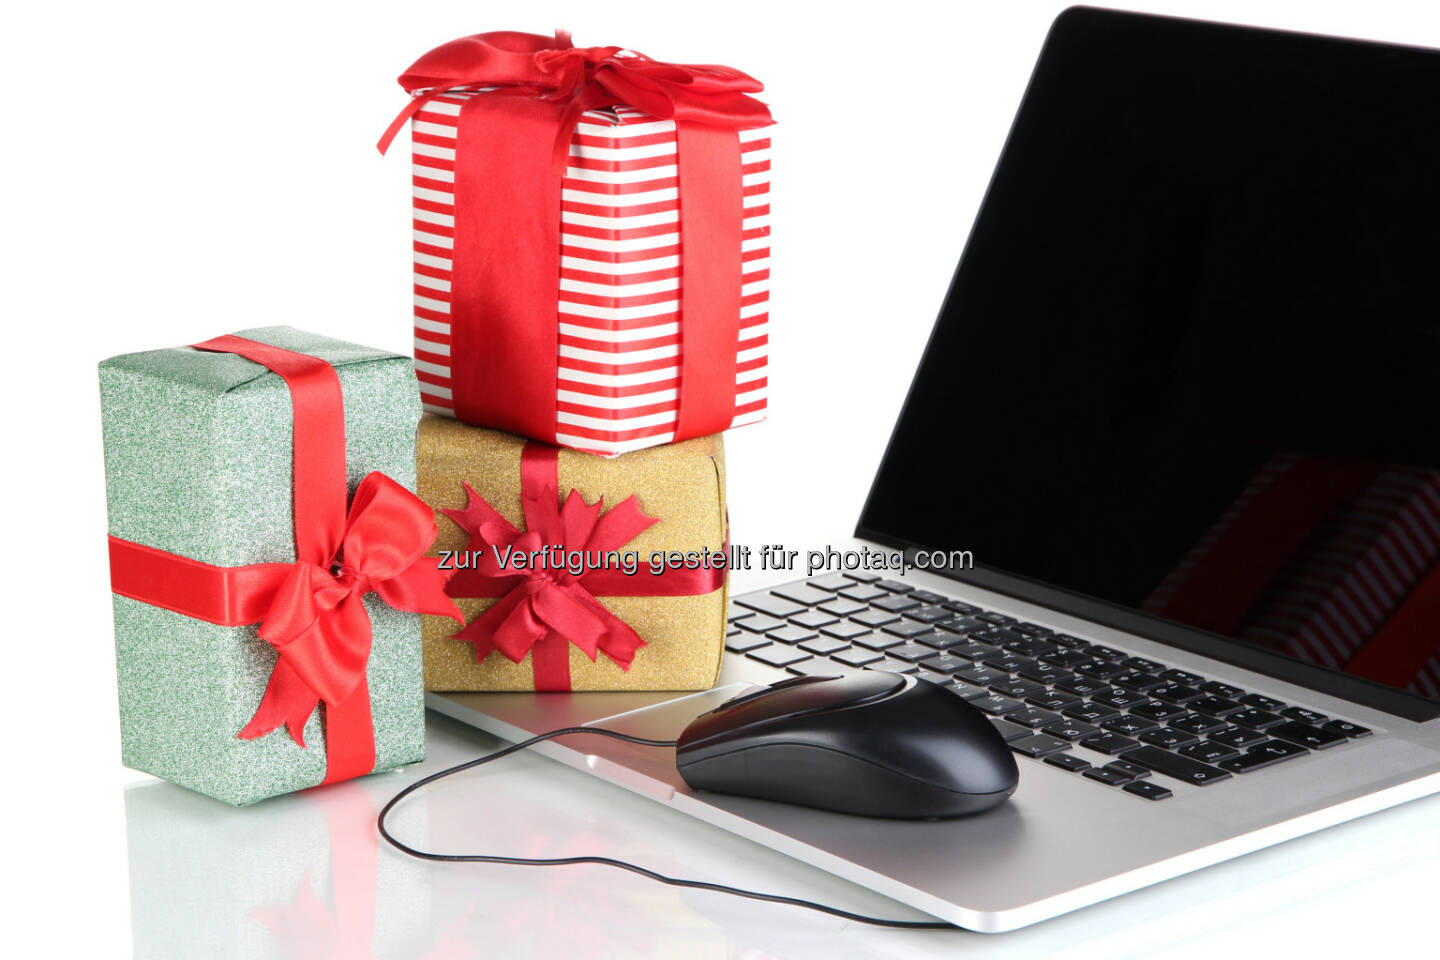 Österreichisches E-Commerce Gütezeichen: 10 Tipps für ein sicheres Weihnachts-Shopping im Internet, mehr dazu unter https://www.guetezeichen.at/konsumentinnen/vorteile-fuer-konsumentinnen.html  (Bild: Africa Studio - Fotolia)